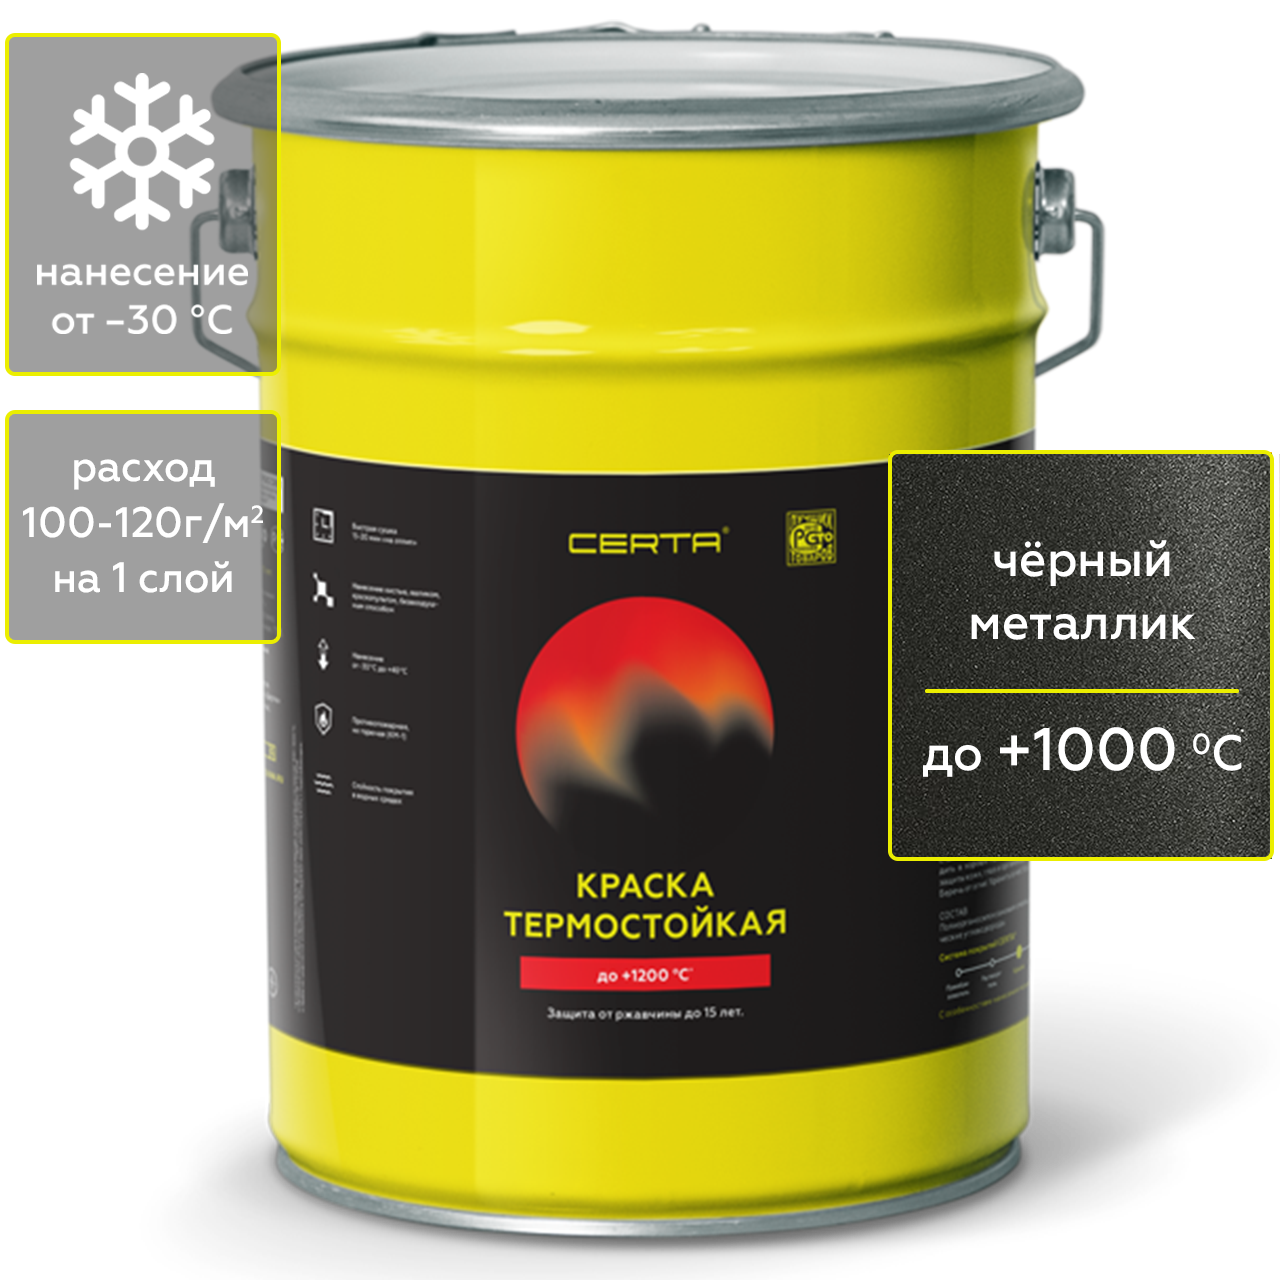 Краска Certa HS для печей, мангалов, радиаторов термостойкая до 1000°С чёрный металлик 4кг